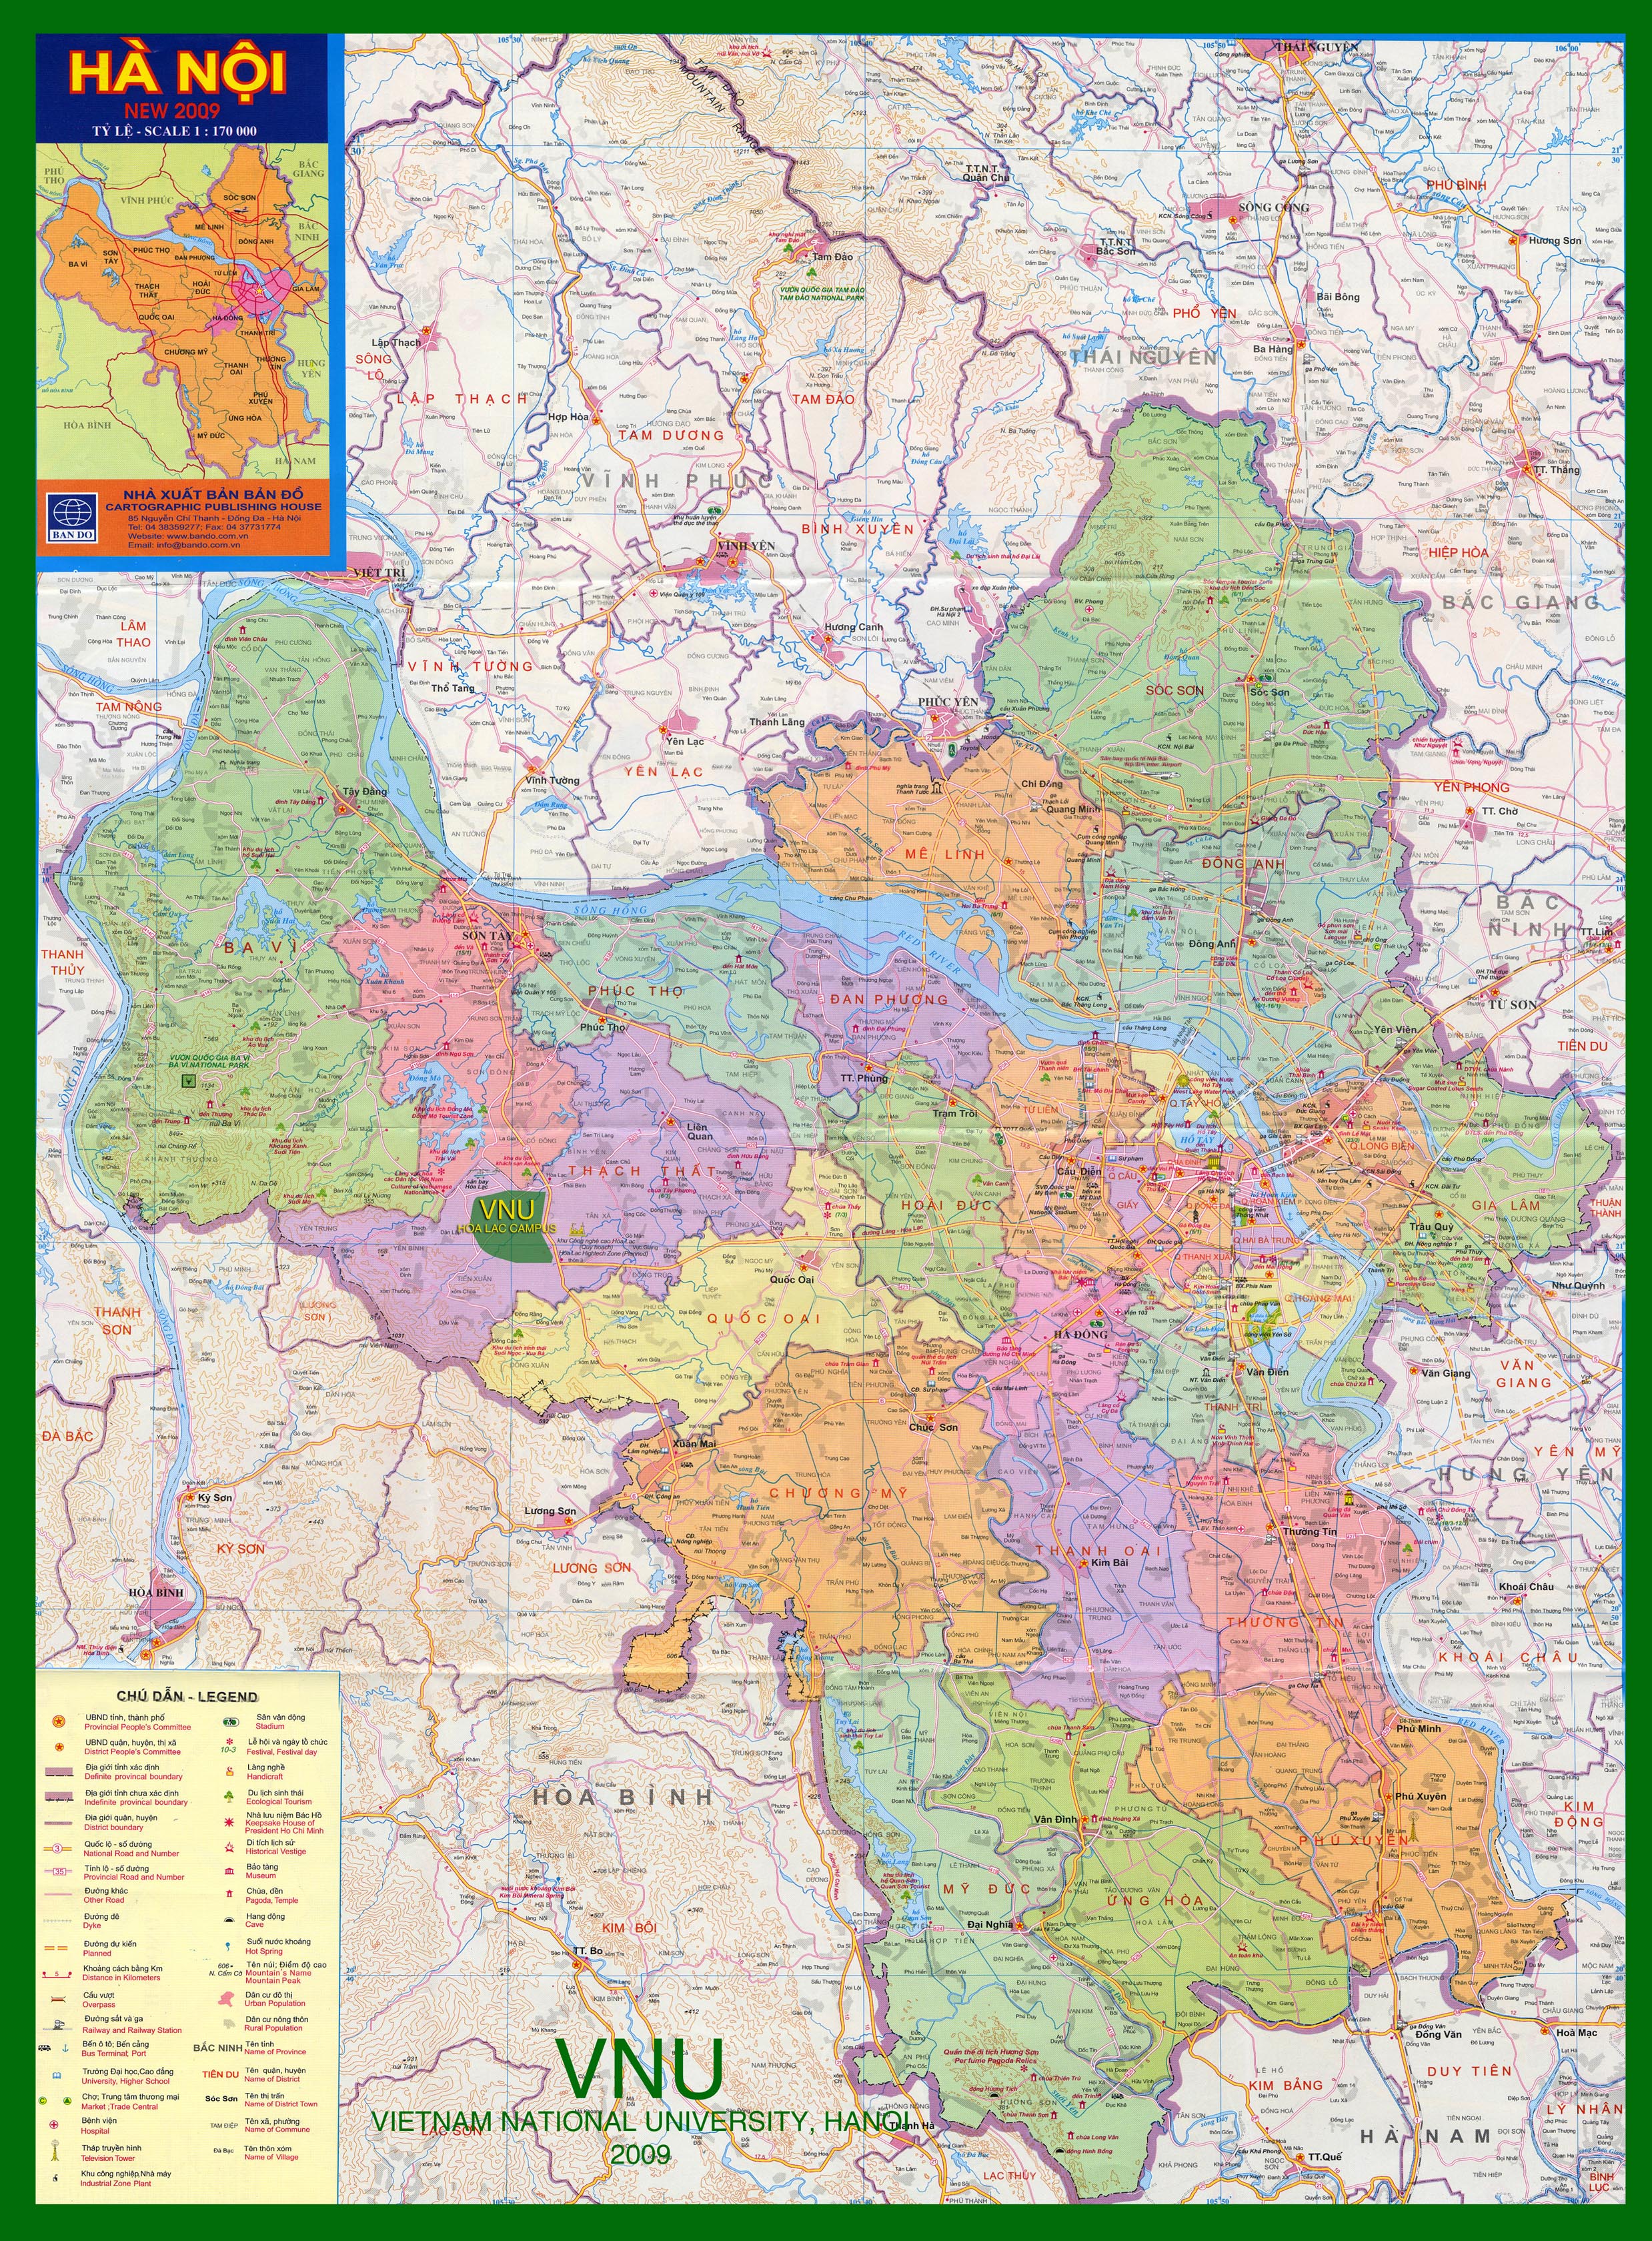 Bản đồ các quận Hà Nội cung cấp cho bạn những thông tin chi tiết và chính xác nhất về các quận tại Hà Nội. Sử dụng bản đồ này, bạn có thể dễ dàng tìm kiếm địa điểm, đường đi và việc di chuyển trong các khu vực này. Ngoài ra, bản đồ cũng giúp bạn hiểu rõ hơn về văn hóa và lịch sử của các quận tại Hà Nội.